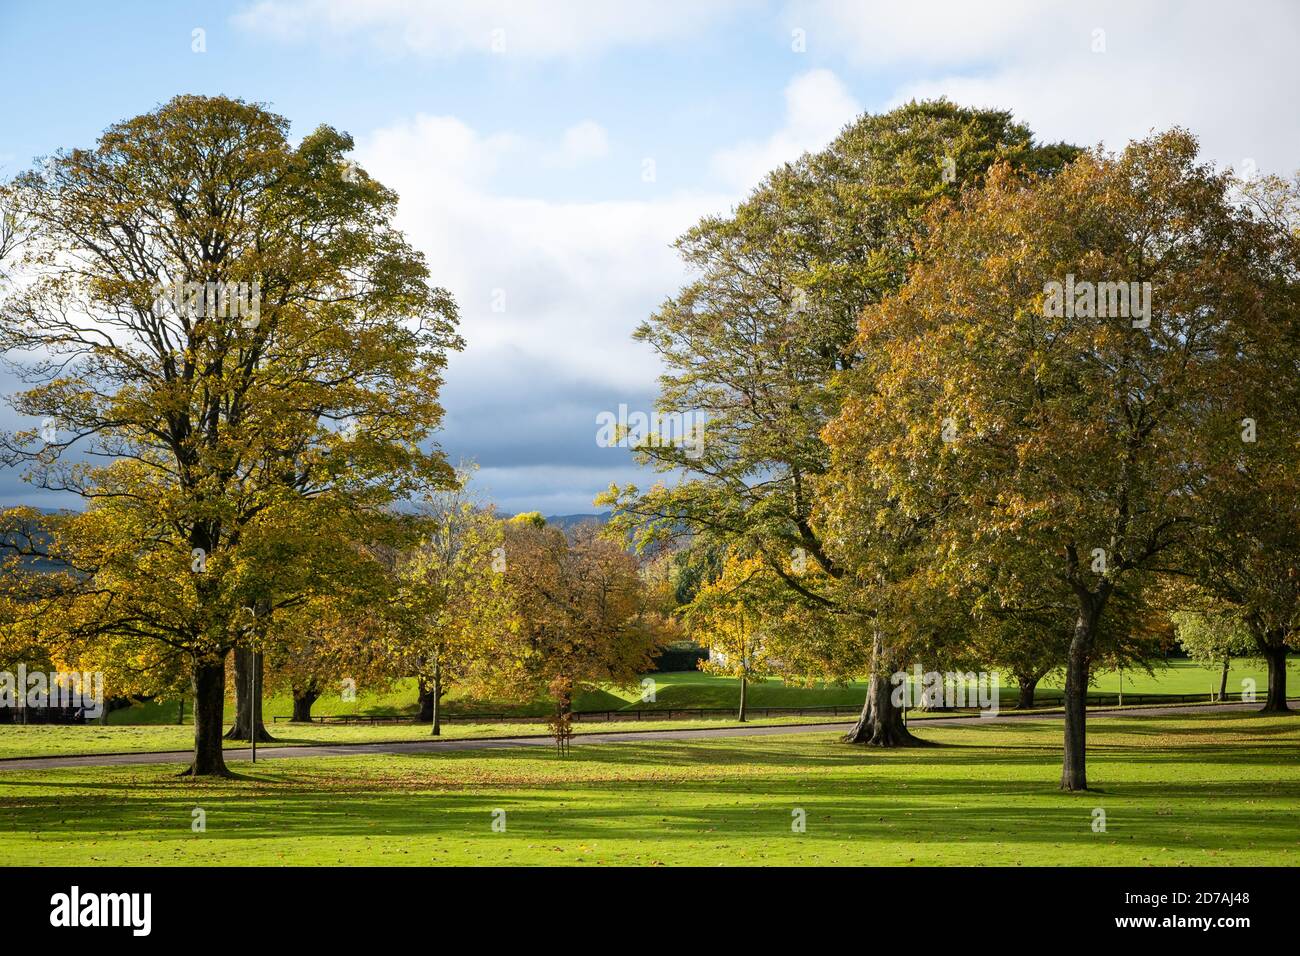 Octobre 2020, Crichton Campus, Dumfries, Écosse. Le soleil, les arbres et les couleurs automnales sont relaxants à regarder pendant la pandémie de covid. Banque D'Images